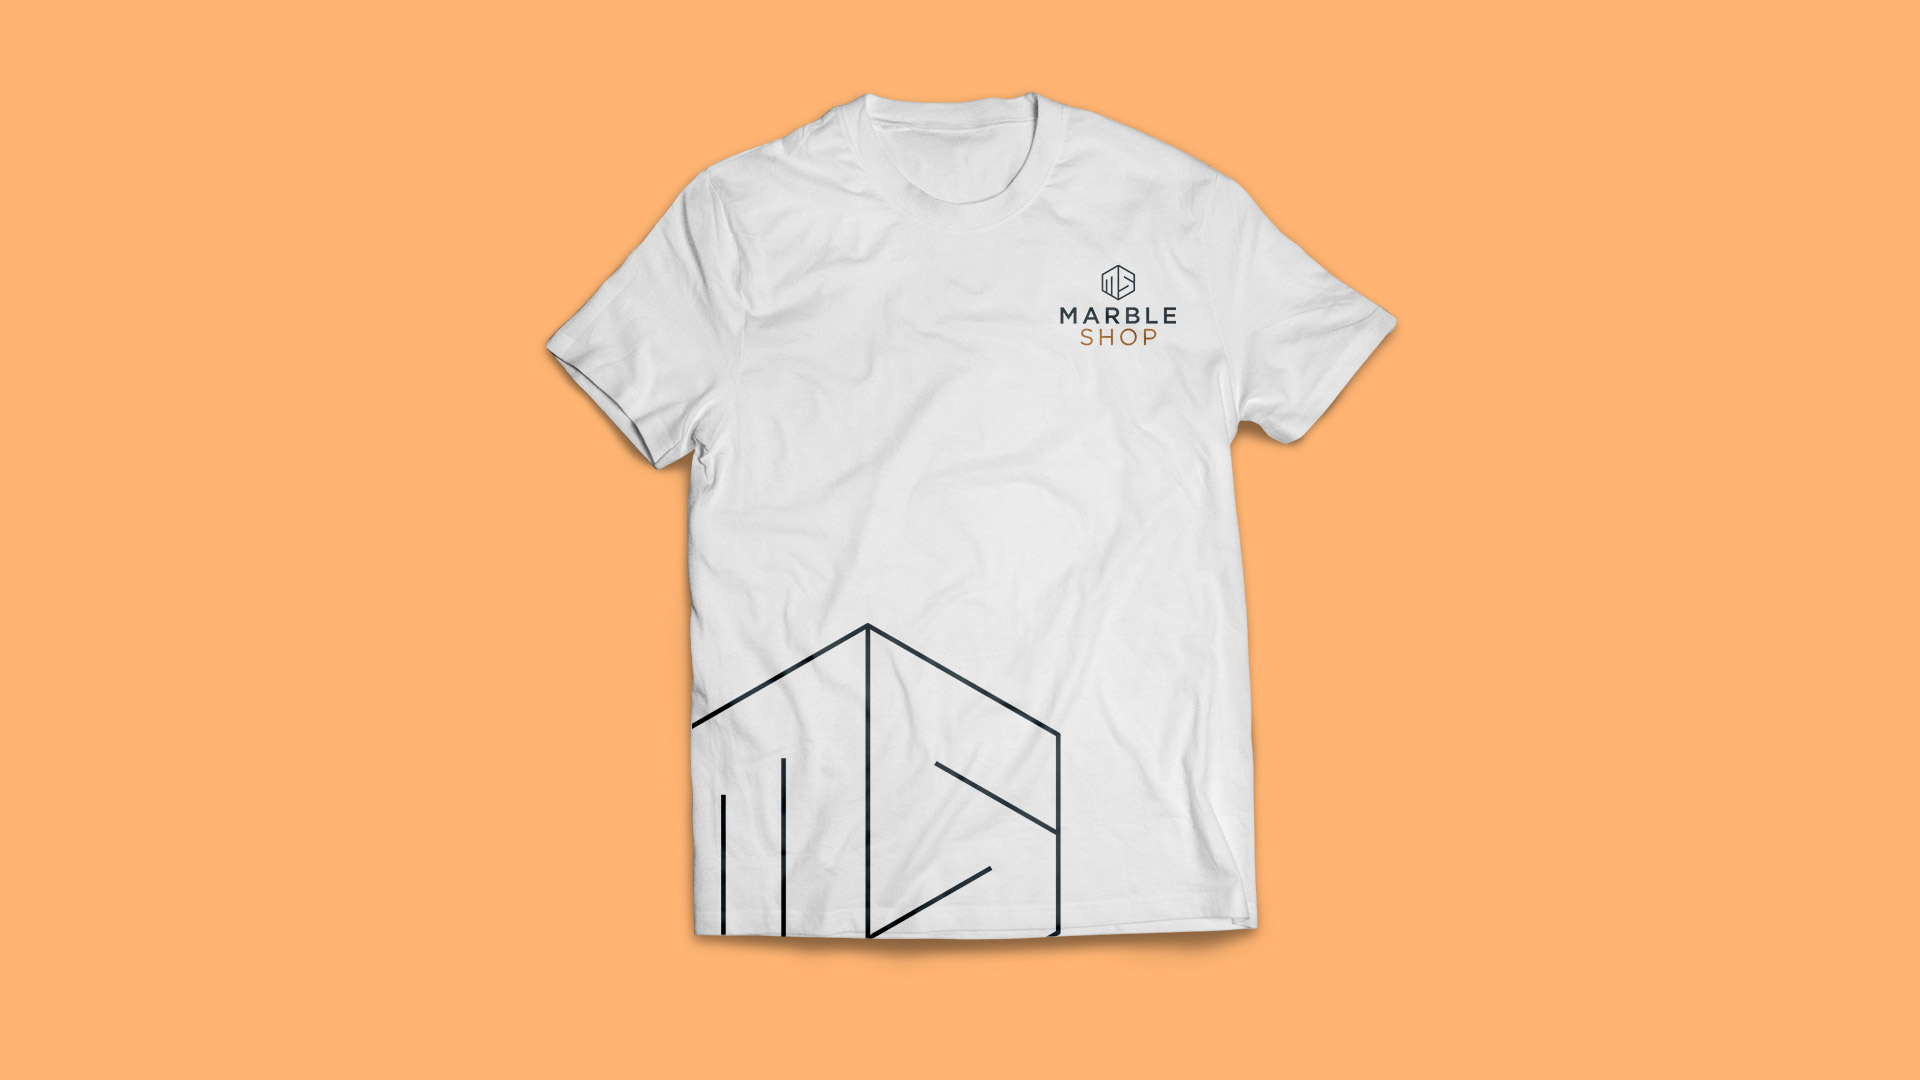 marble shop logo design branding elements t-shirt production 